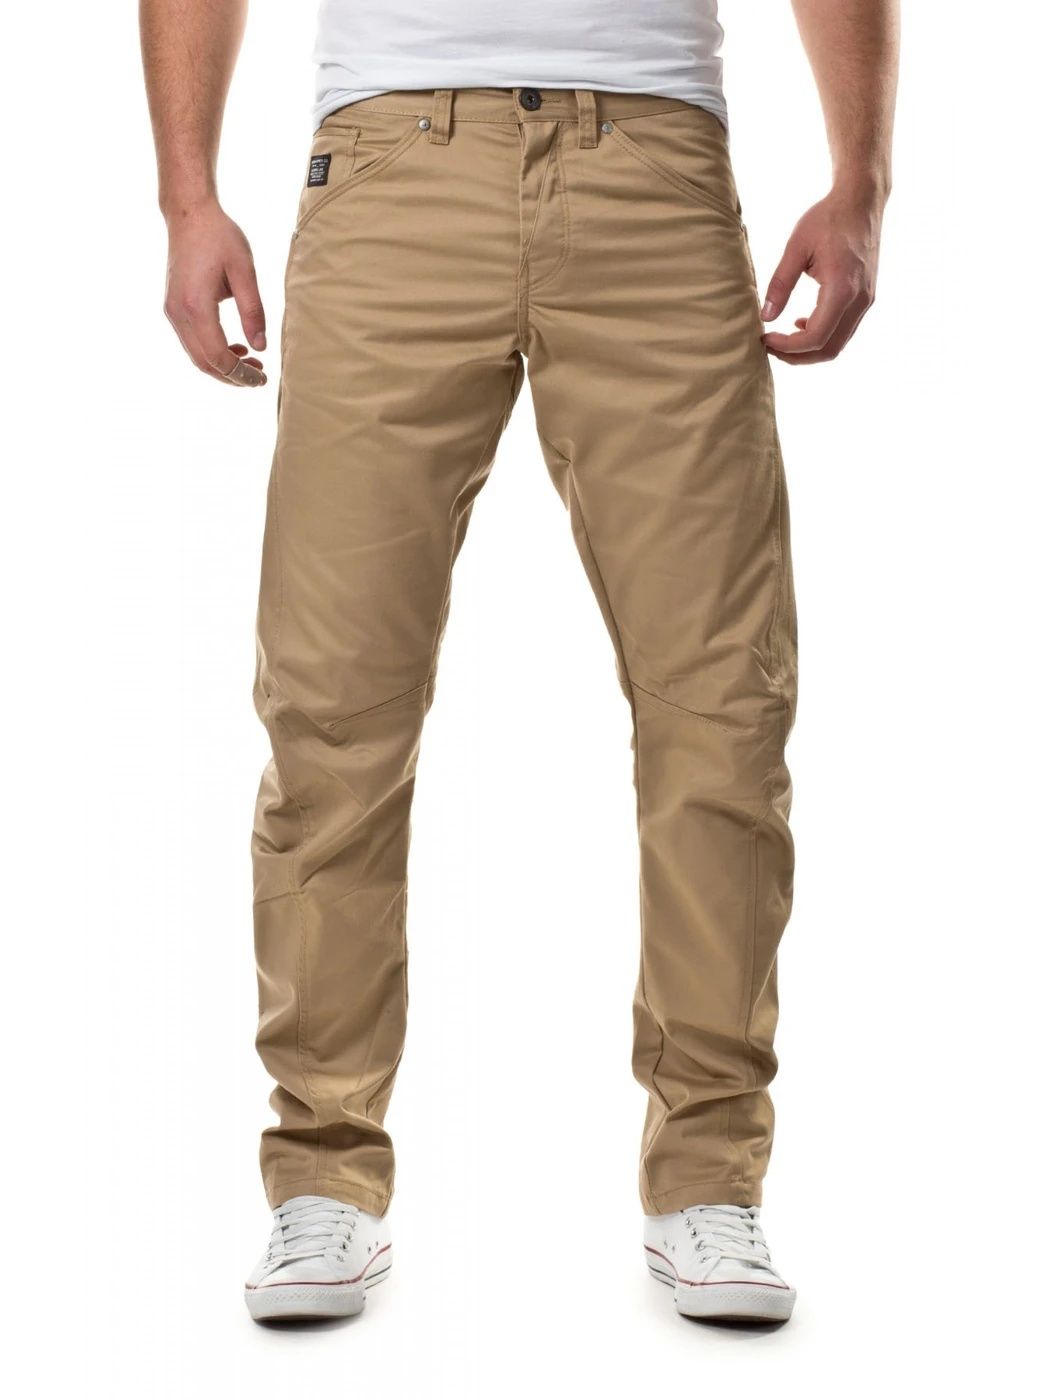 Мужские стильные джинсы Jack & Jones Core 31/32 M (46-48)